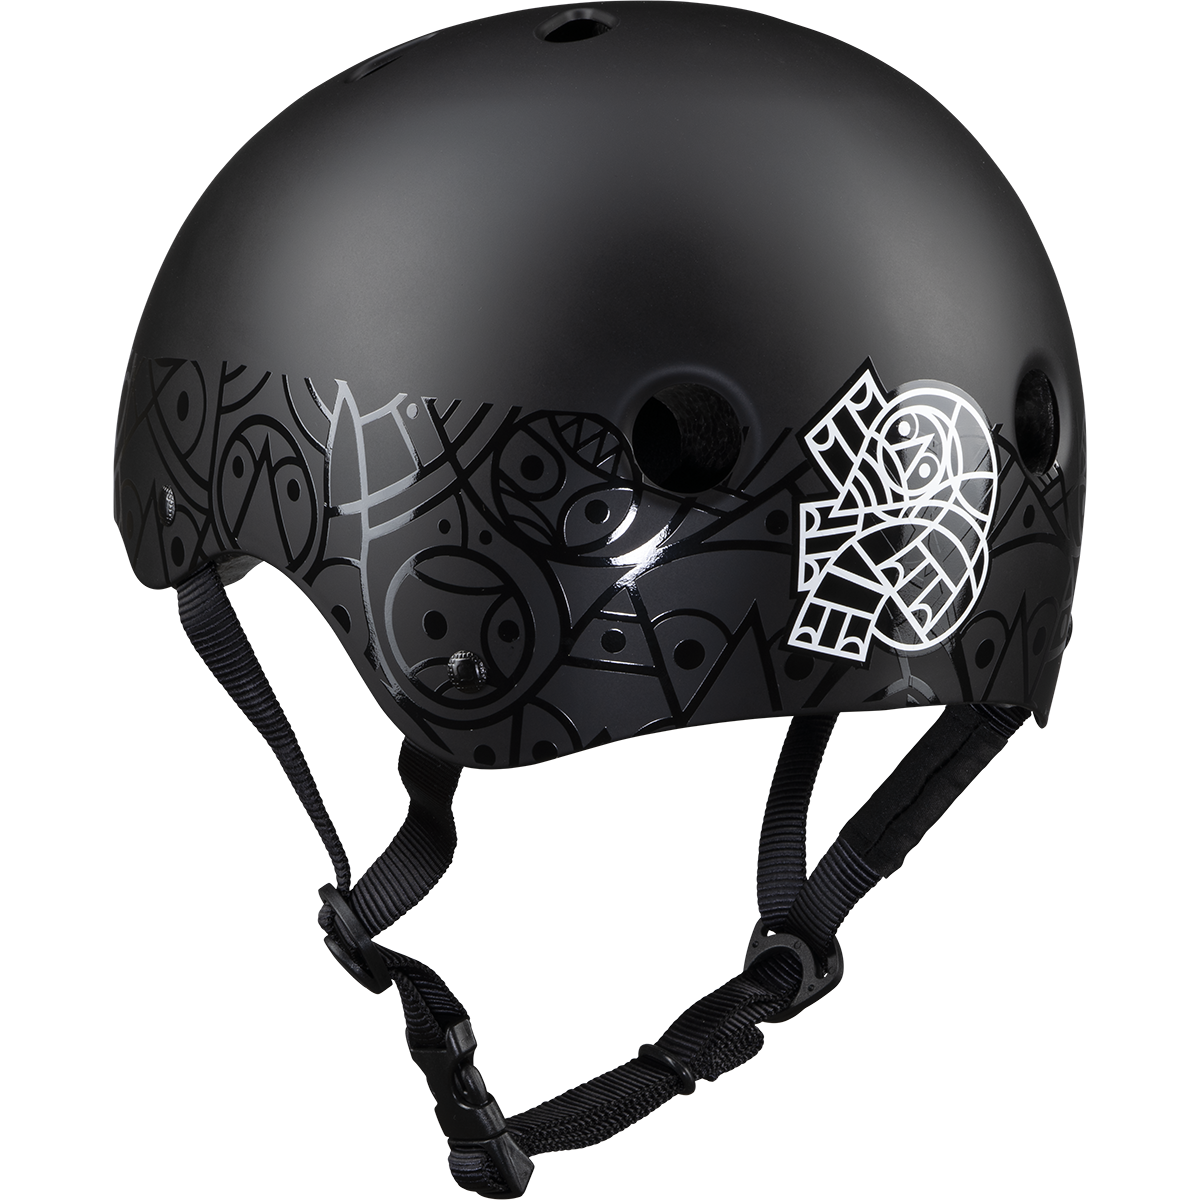 pendleton cycle helmet